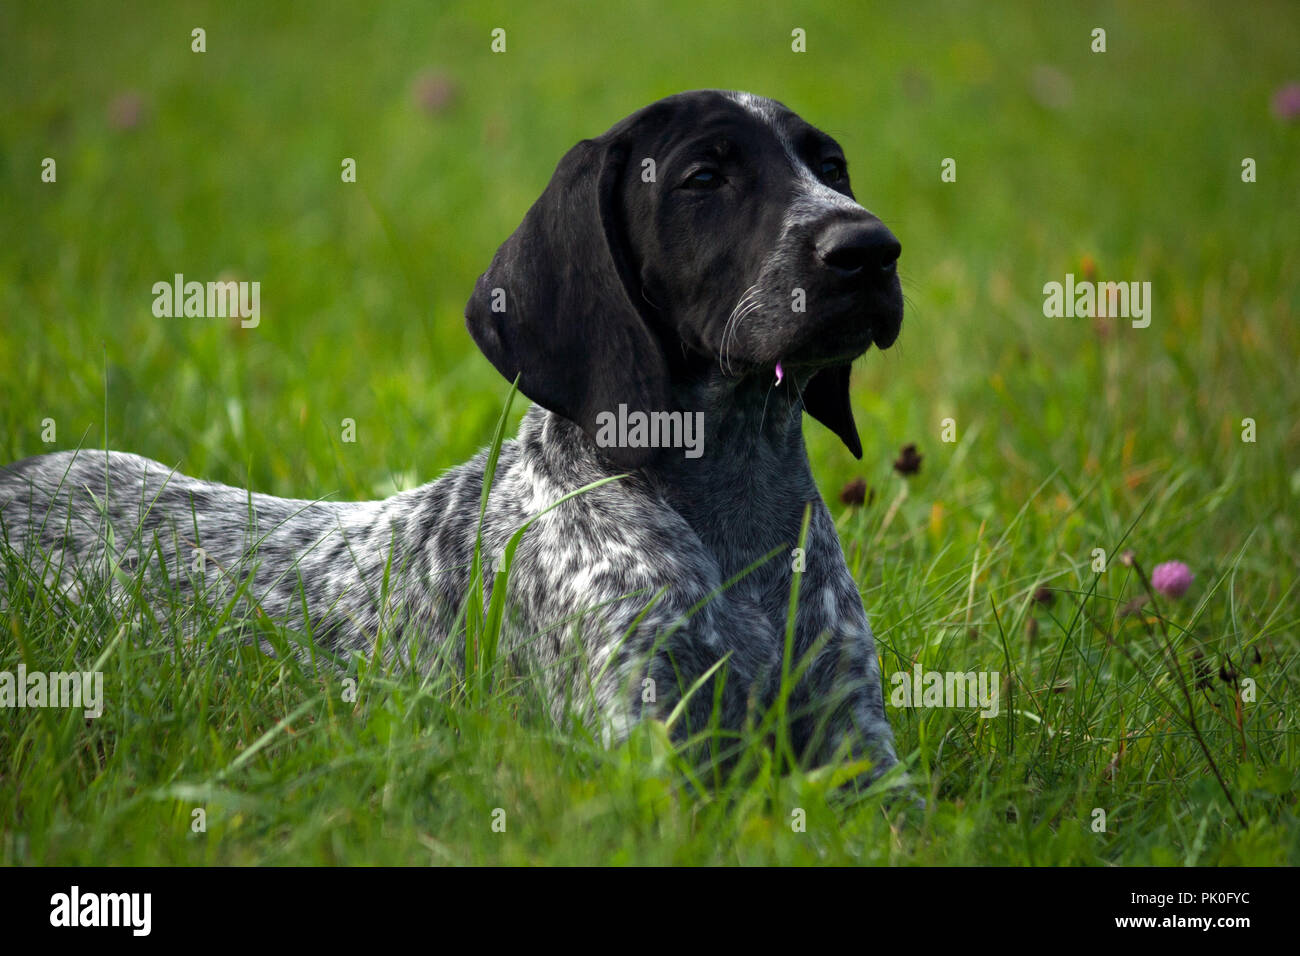 Il tedesco shorthaired puntatore, kurtshaar uno maculato cucciolo nero giacente su erba verde, museruola in profilo, sera, close-up ritratto, Foto Stock